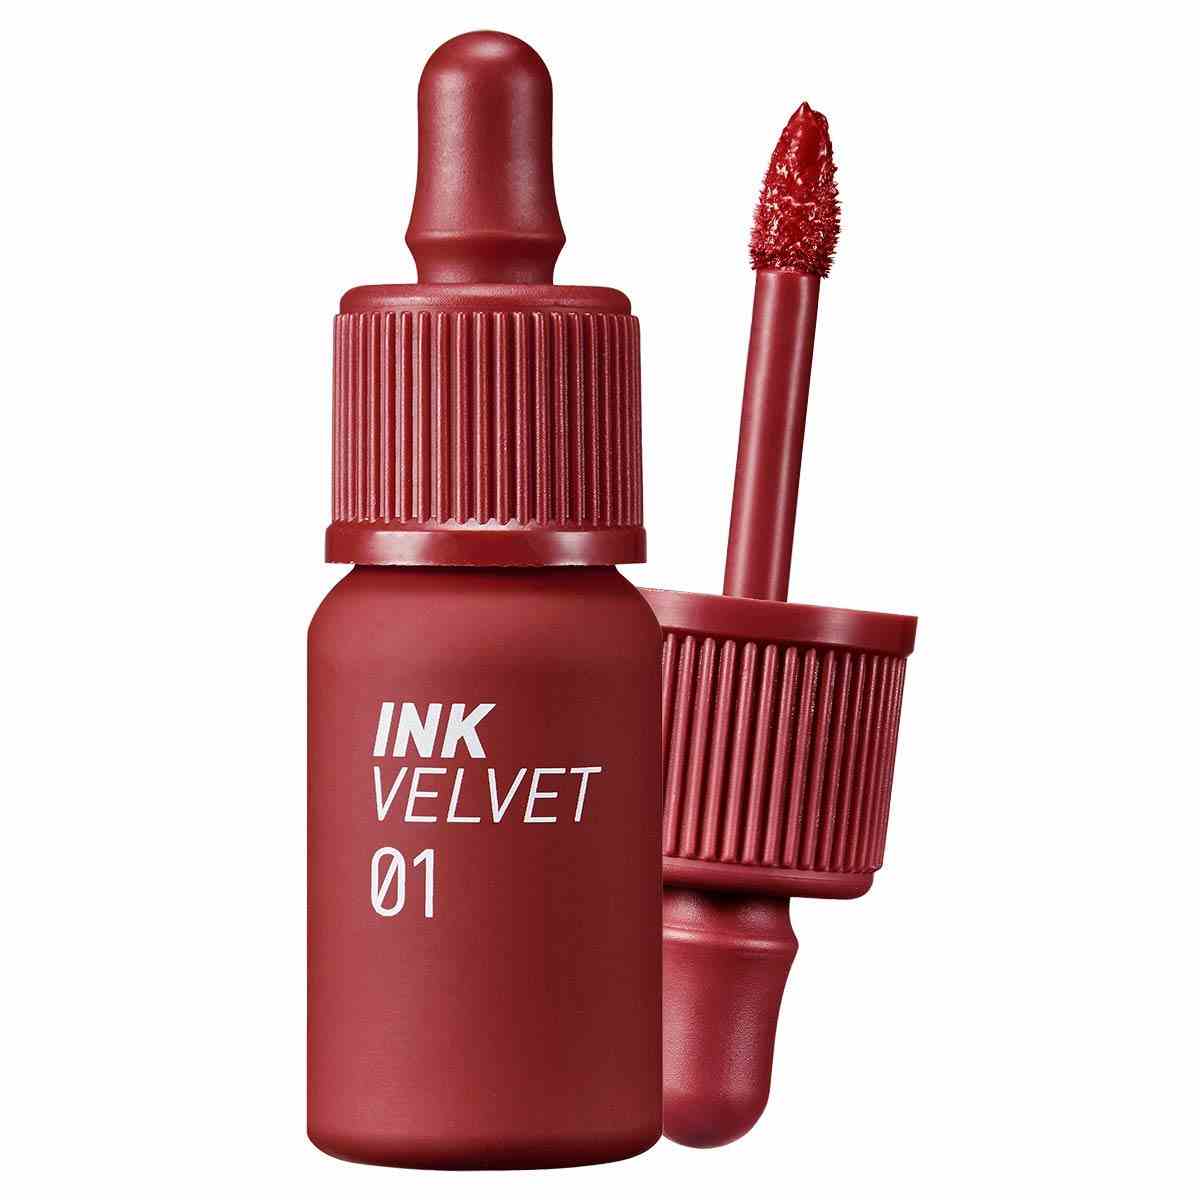 Peripera Ink the Velvet Lip Tint in Nuance 01 auf weißem Hintergrund